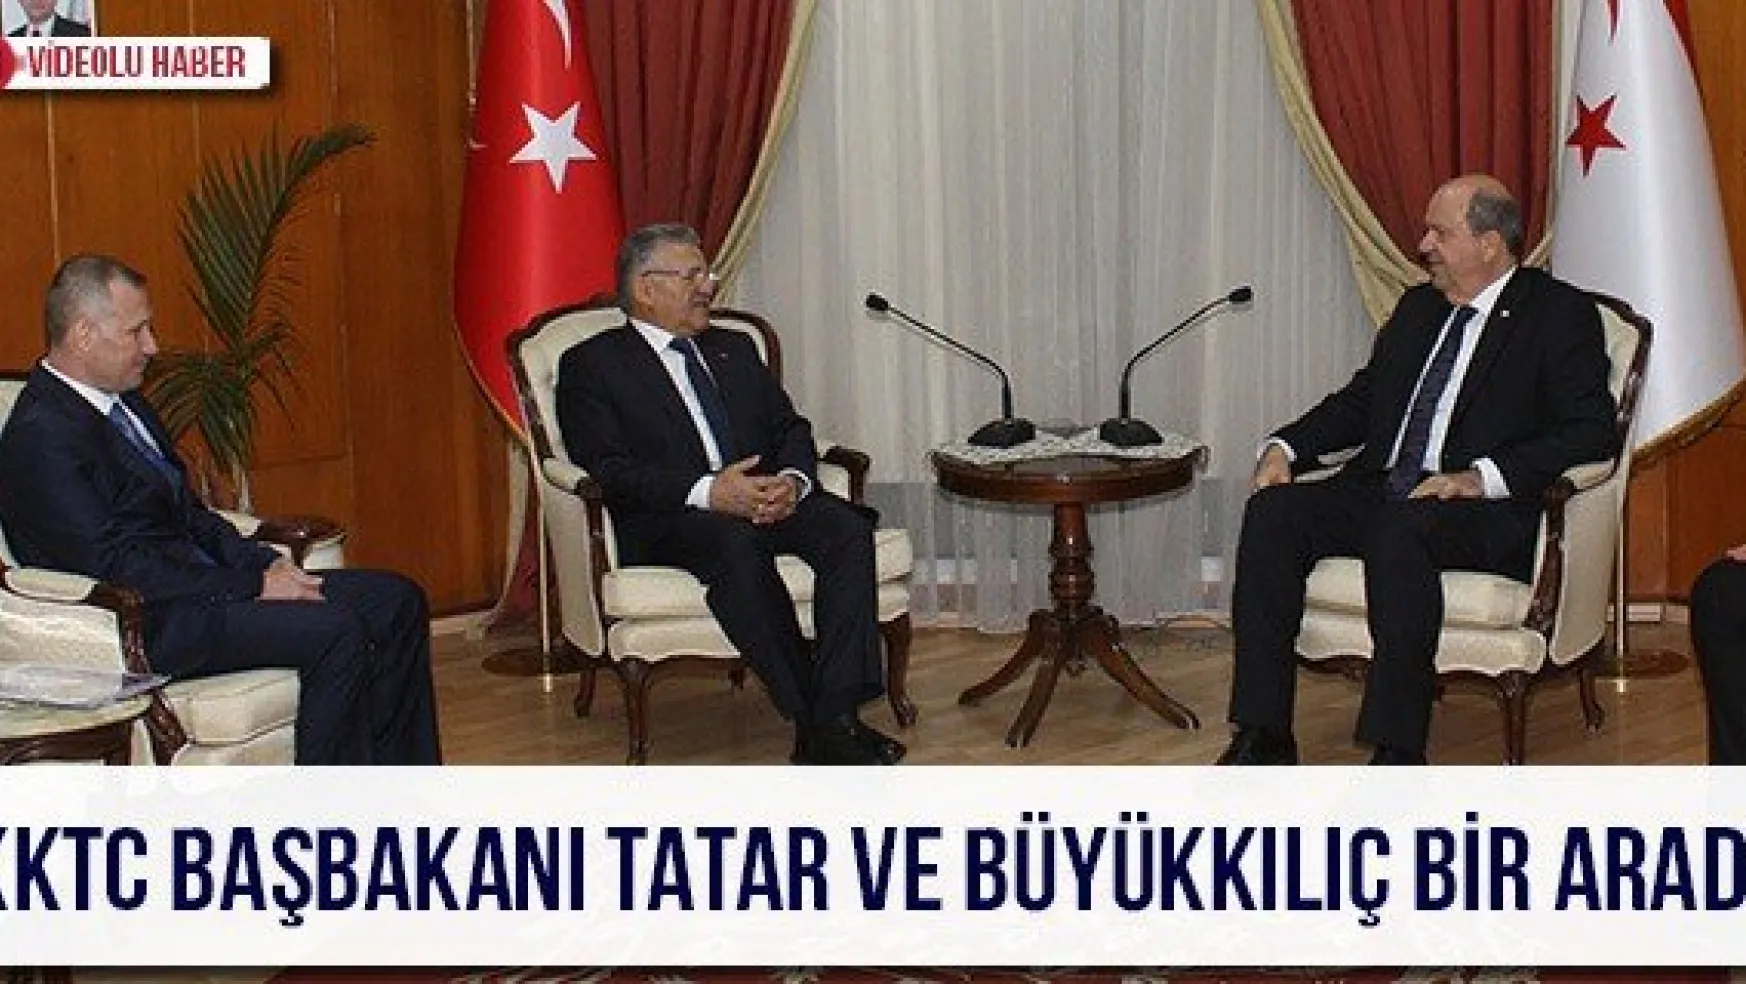 KKTC Başbakanı Tatar ve Büyükkılıç bir arada